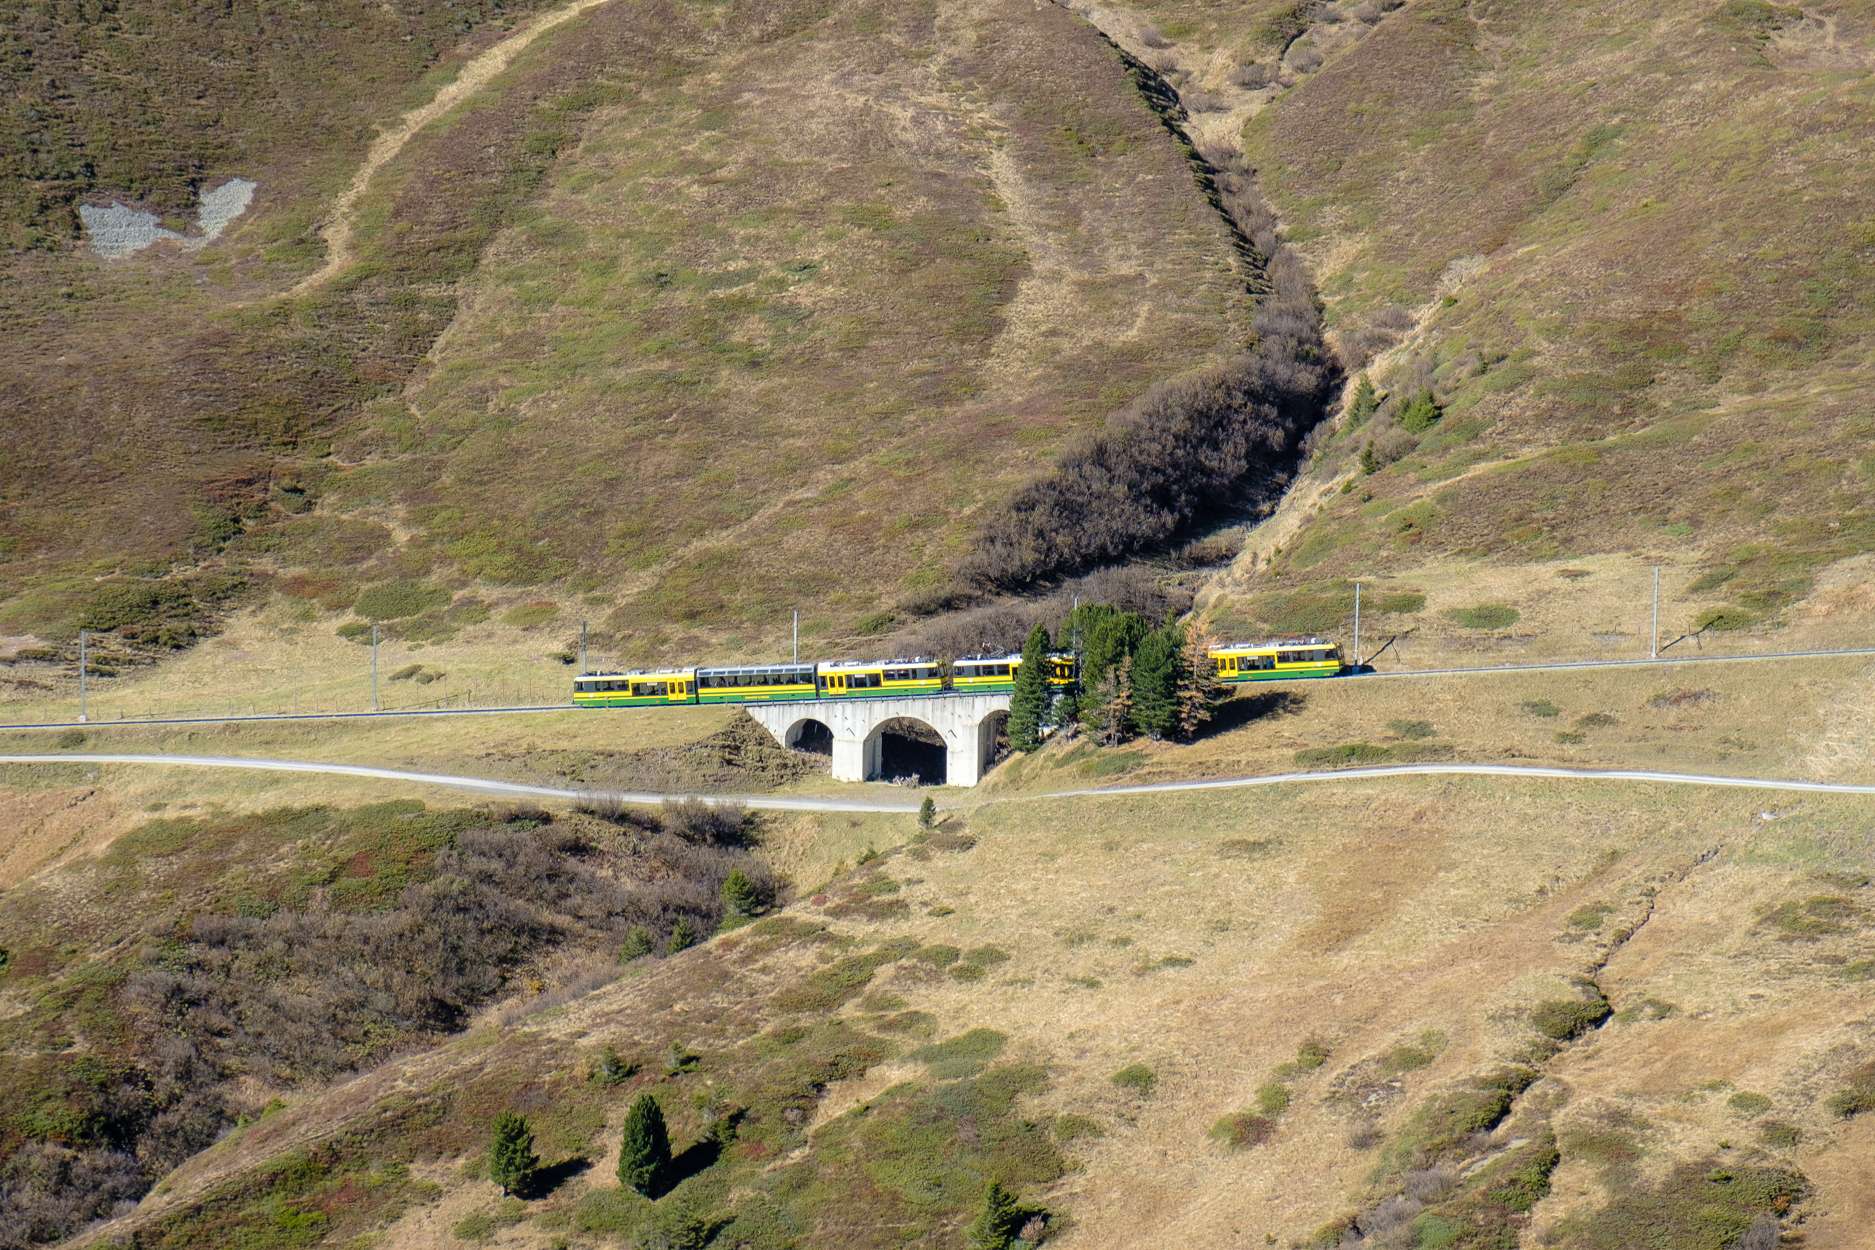 A green and yellow train from Kleine Scheidegg